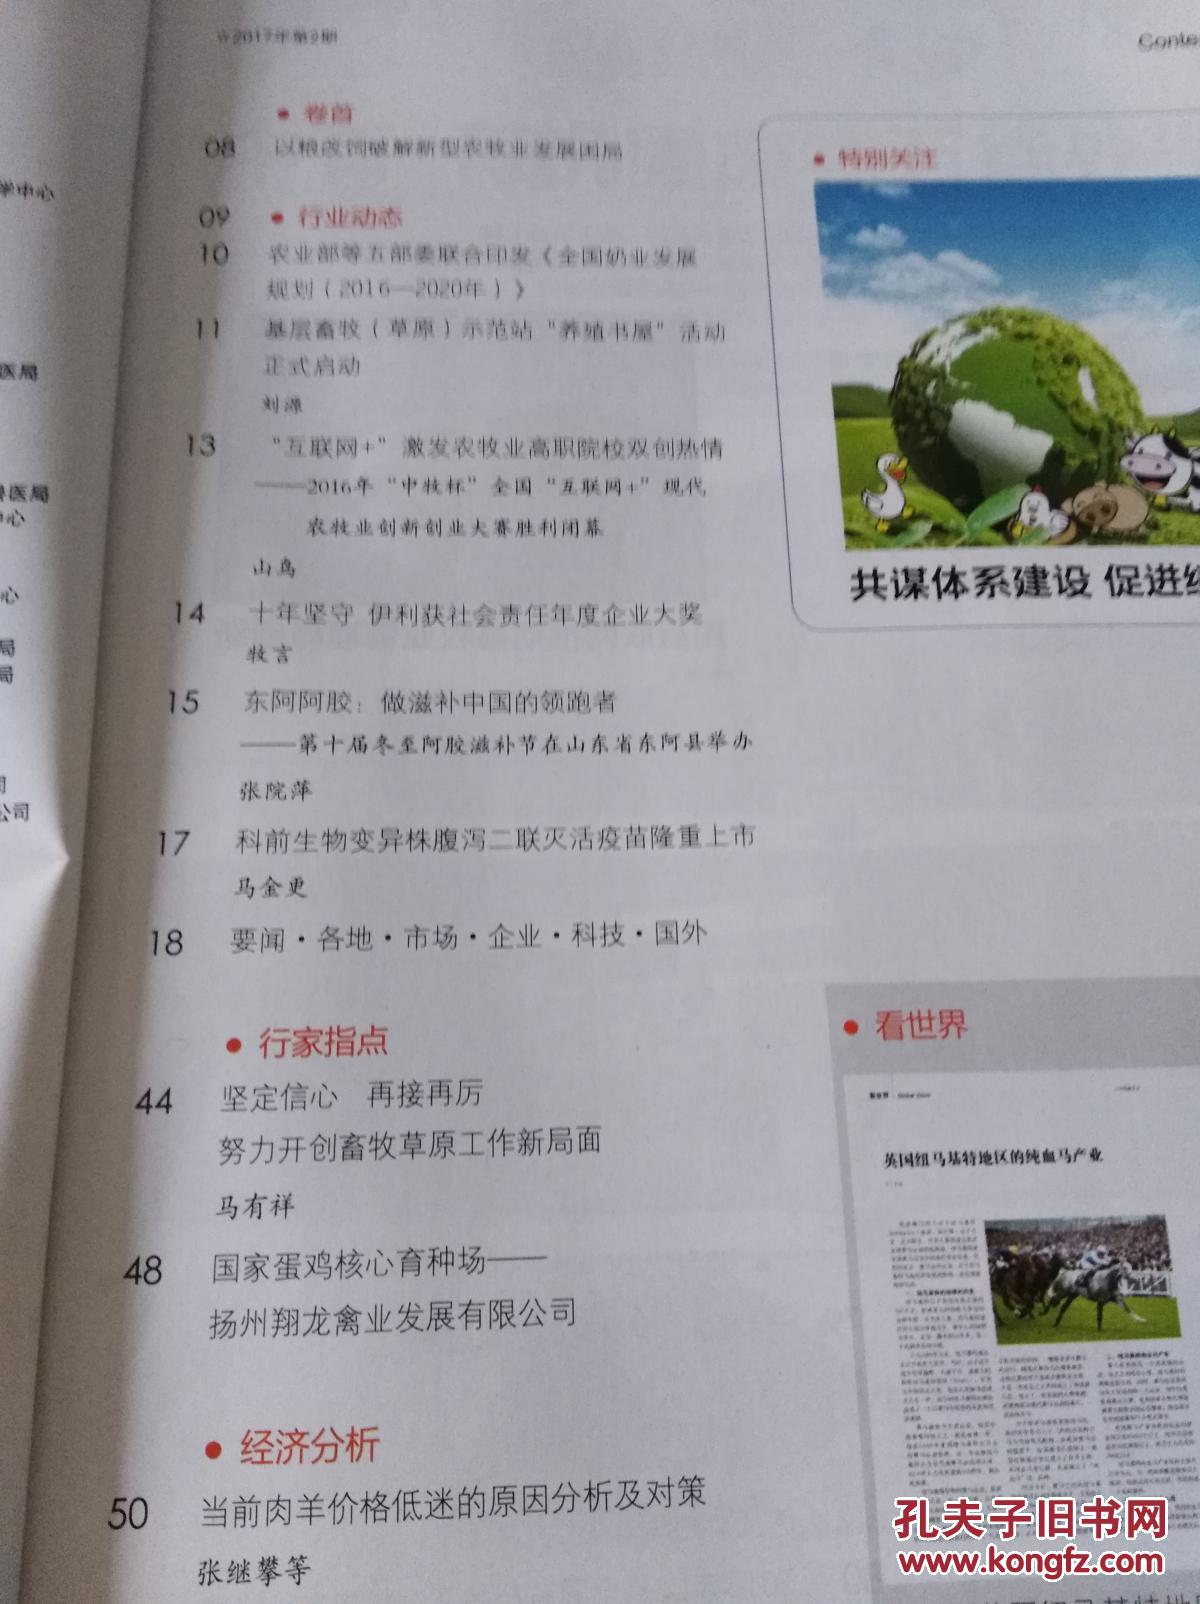 【图】中国畜牧业(半月刊)2017年第2期(包括:《